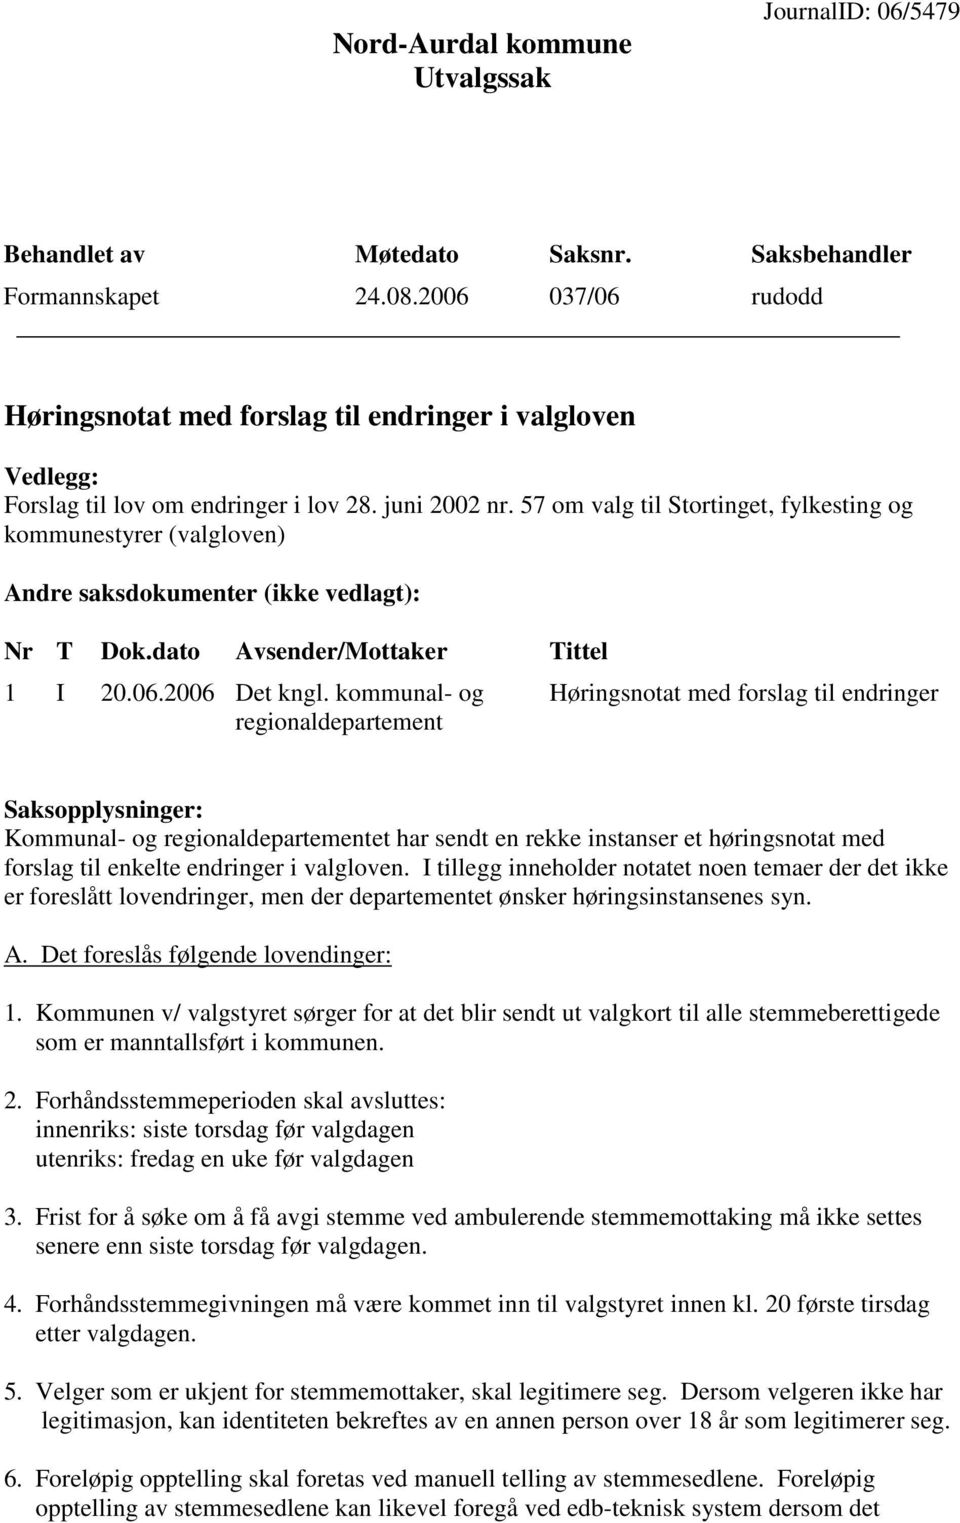 57 om valg til Stortinget, fylkesting og kommunestyrer (valgloven) Andre saksdokumenter (ikke vedlagt): Nr T Dok.dato Avsender/Mottaker Tittel 1 I 20.06.2006 Det kngl.